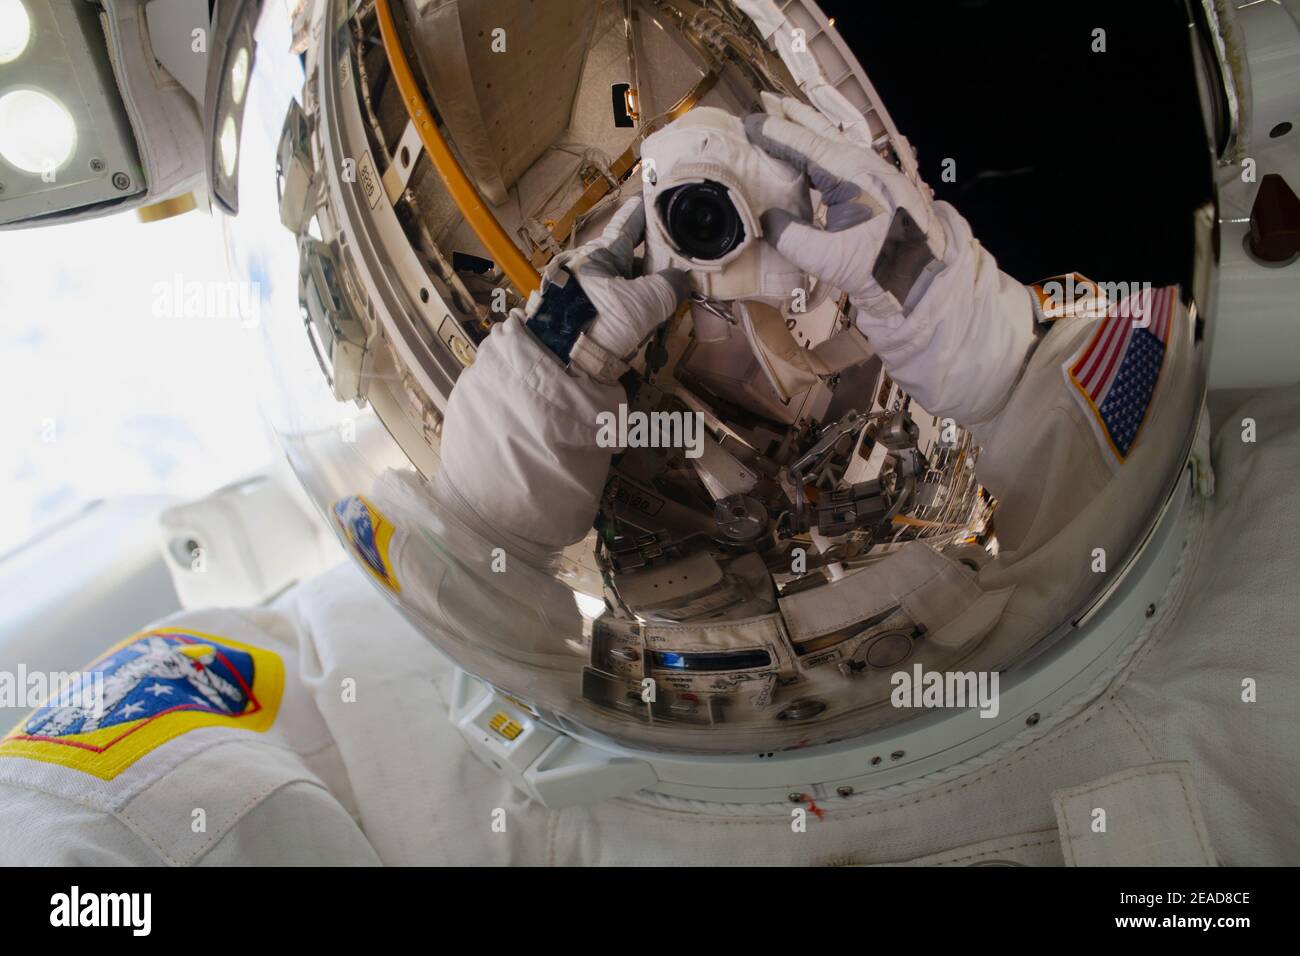 ISS - 1 febbraio 2021 - l'astronauta della NASA Michael Hopkins punta la sua macchina fotografica, isolata dall'ambiente nocivo dello spazio, verso il suo casco spaziale Foto Stock